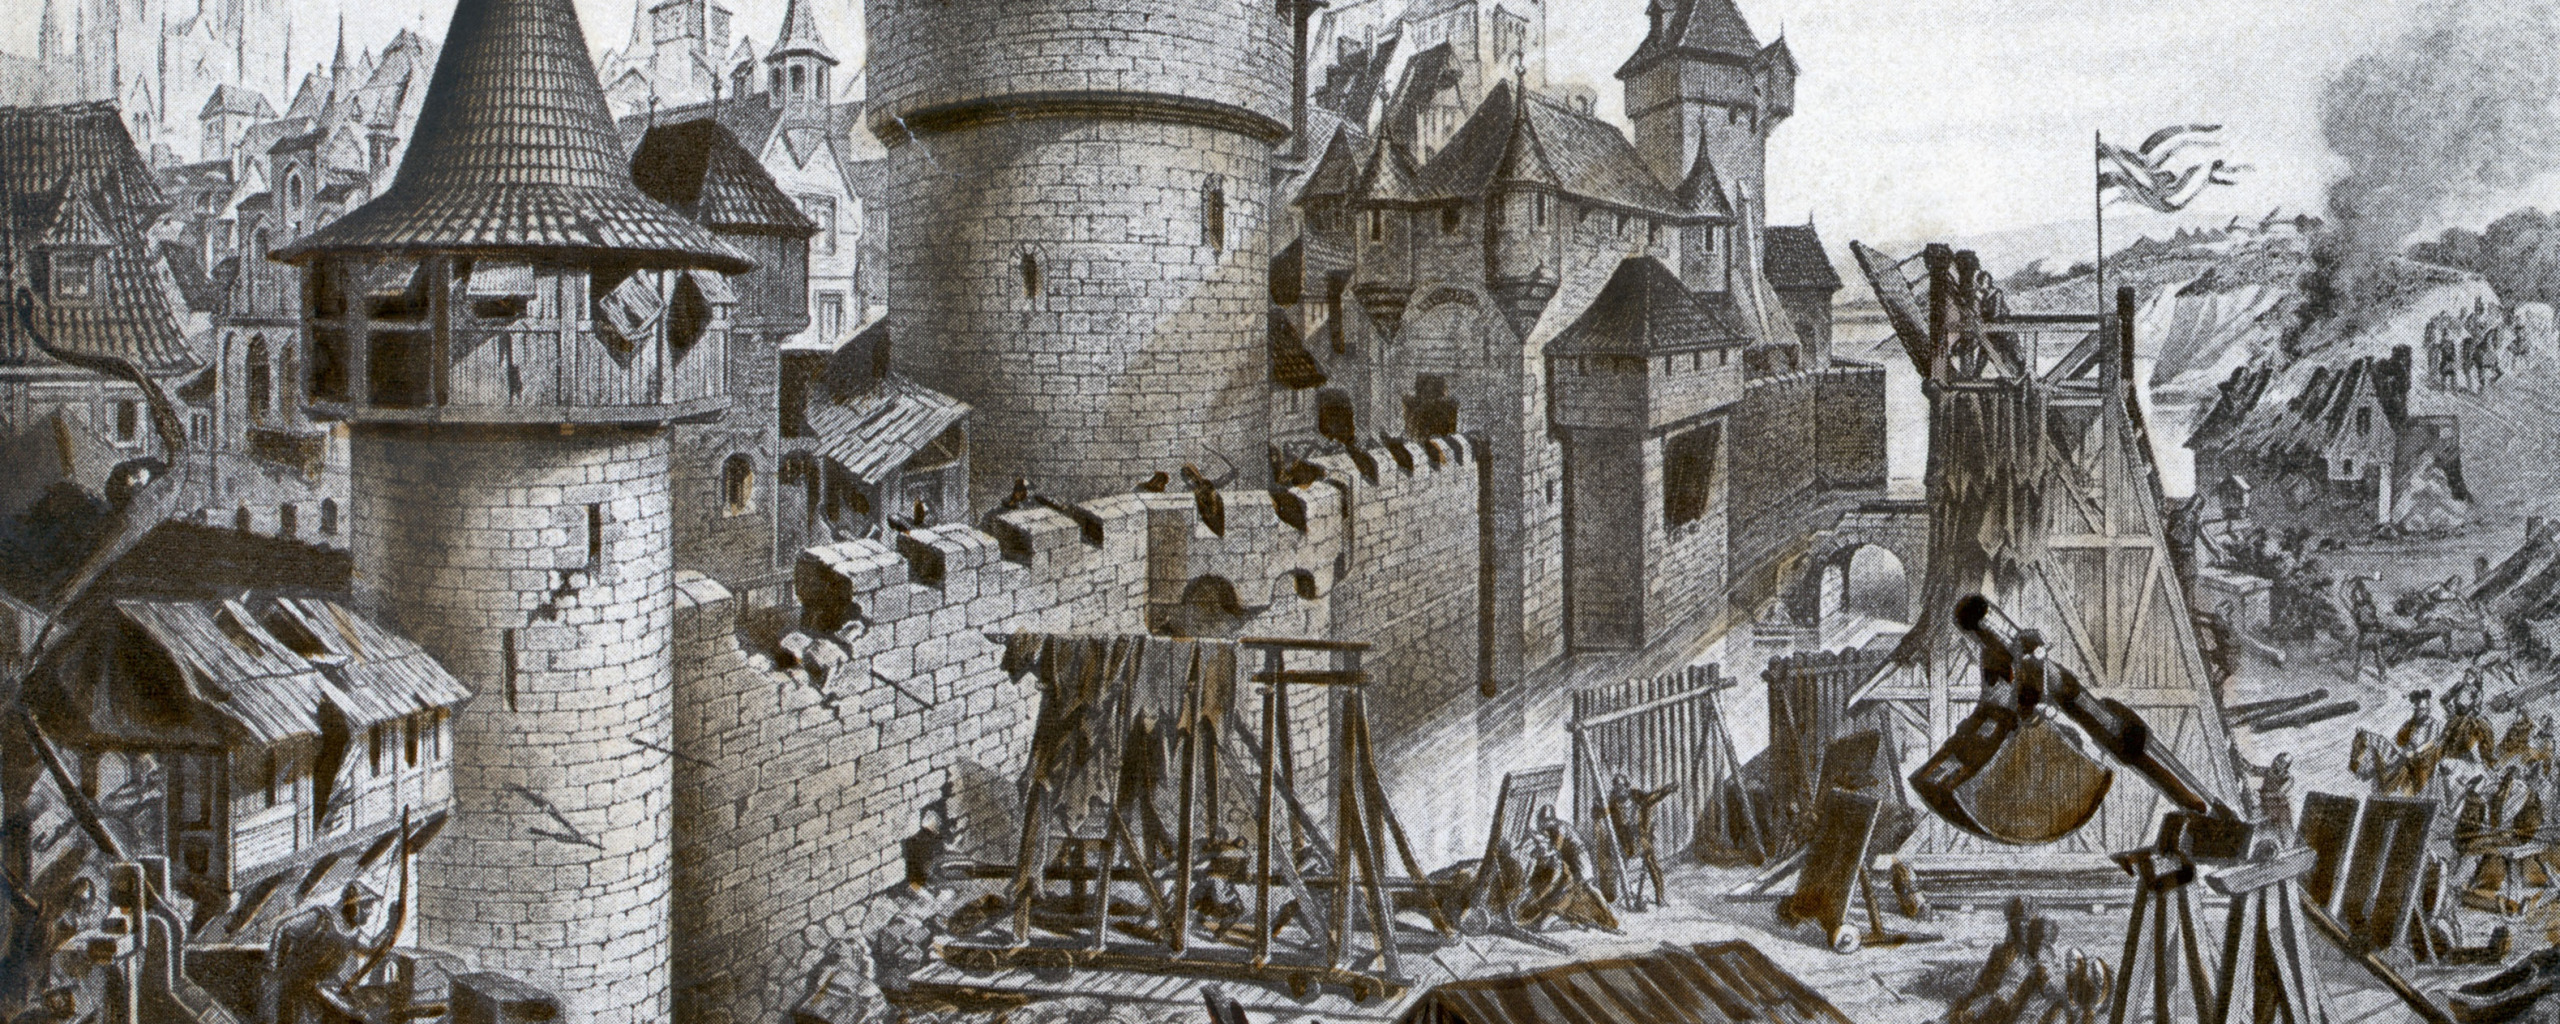 Нападение на замок. Осада Рочестерского замка 1215. Осада Лейдена в 1574. Осада Марселя 1524. Осада Феллина (1560).